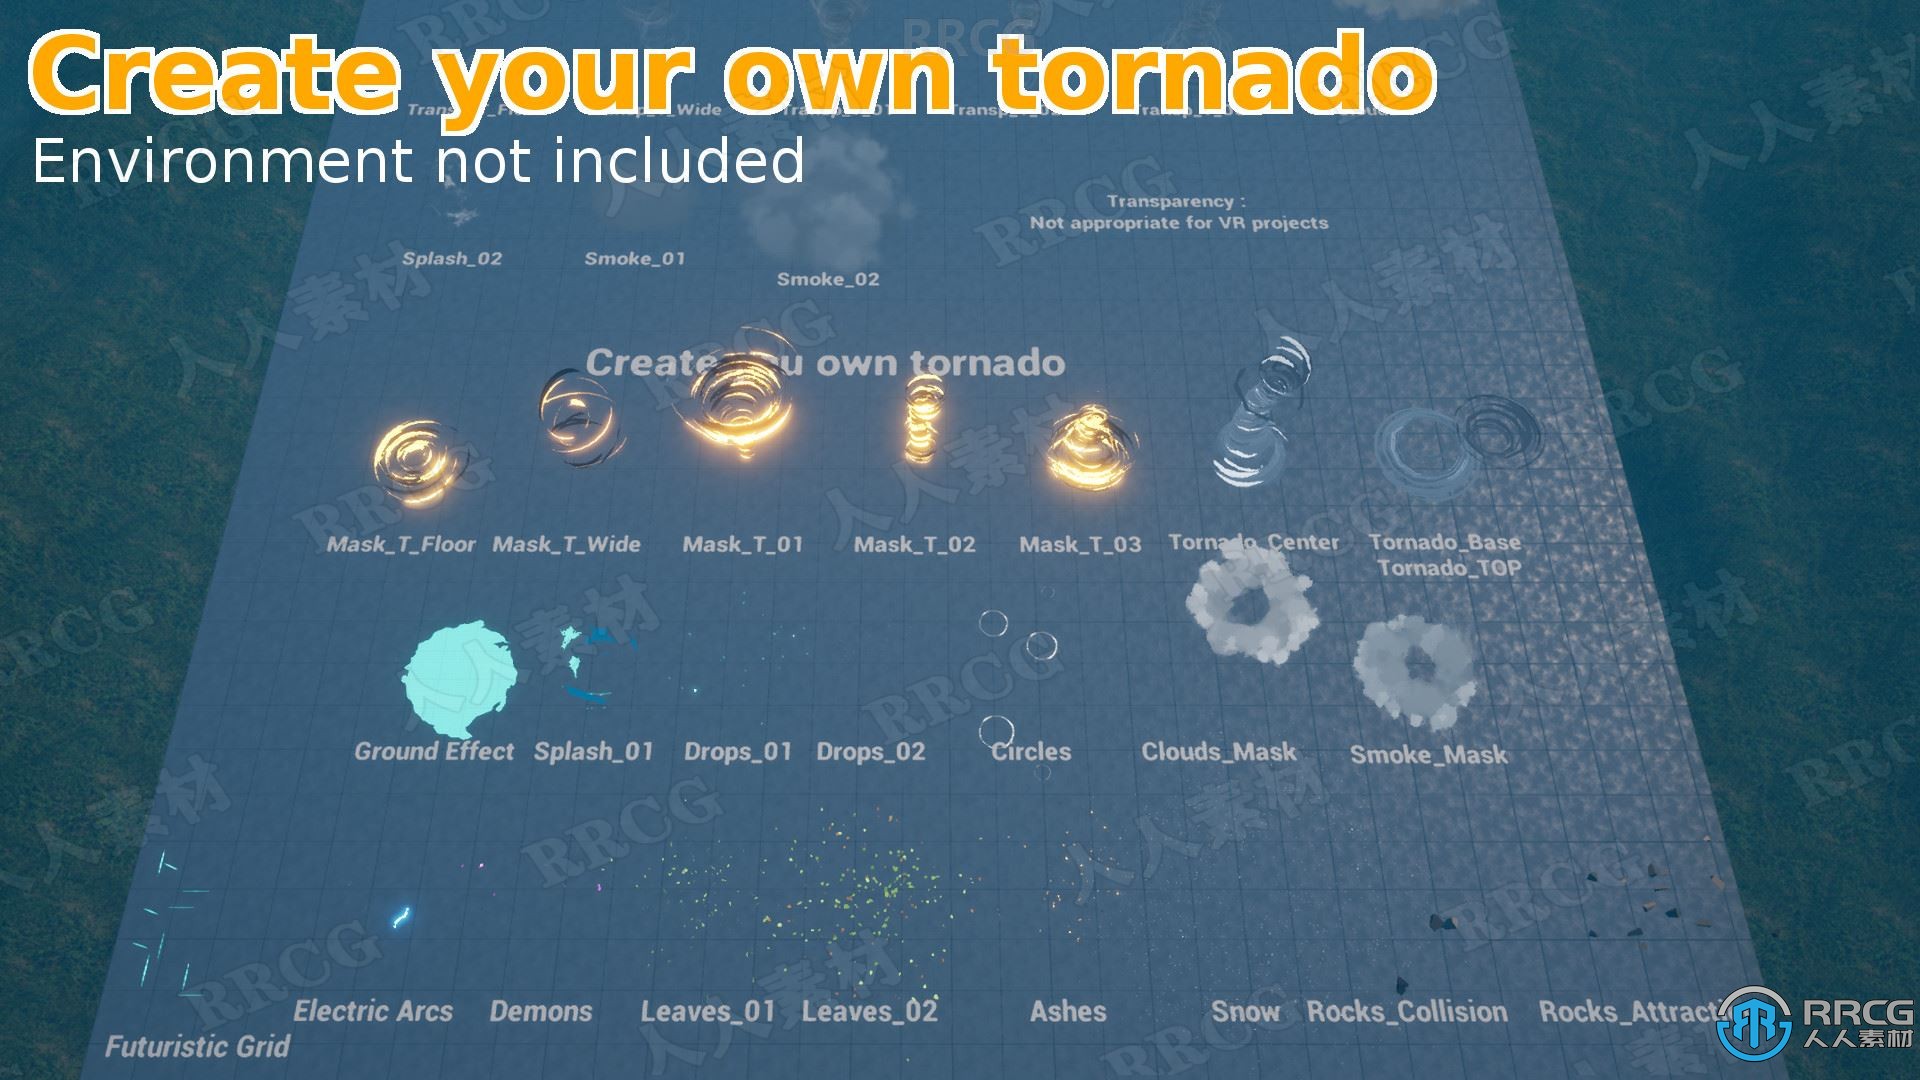 11种龙卷风特效Unreal Engine游戏素材资源